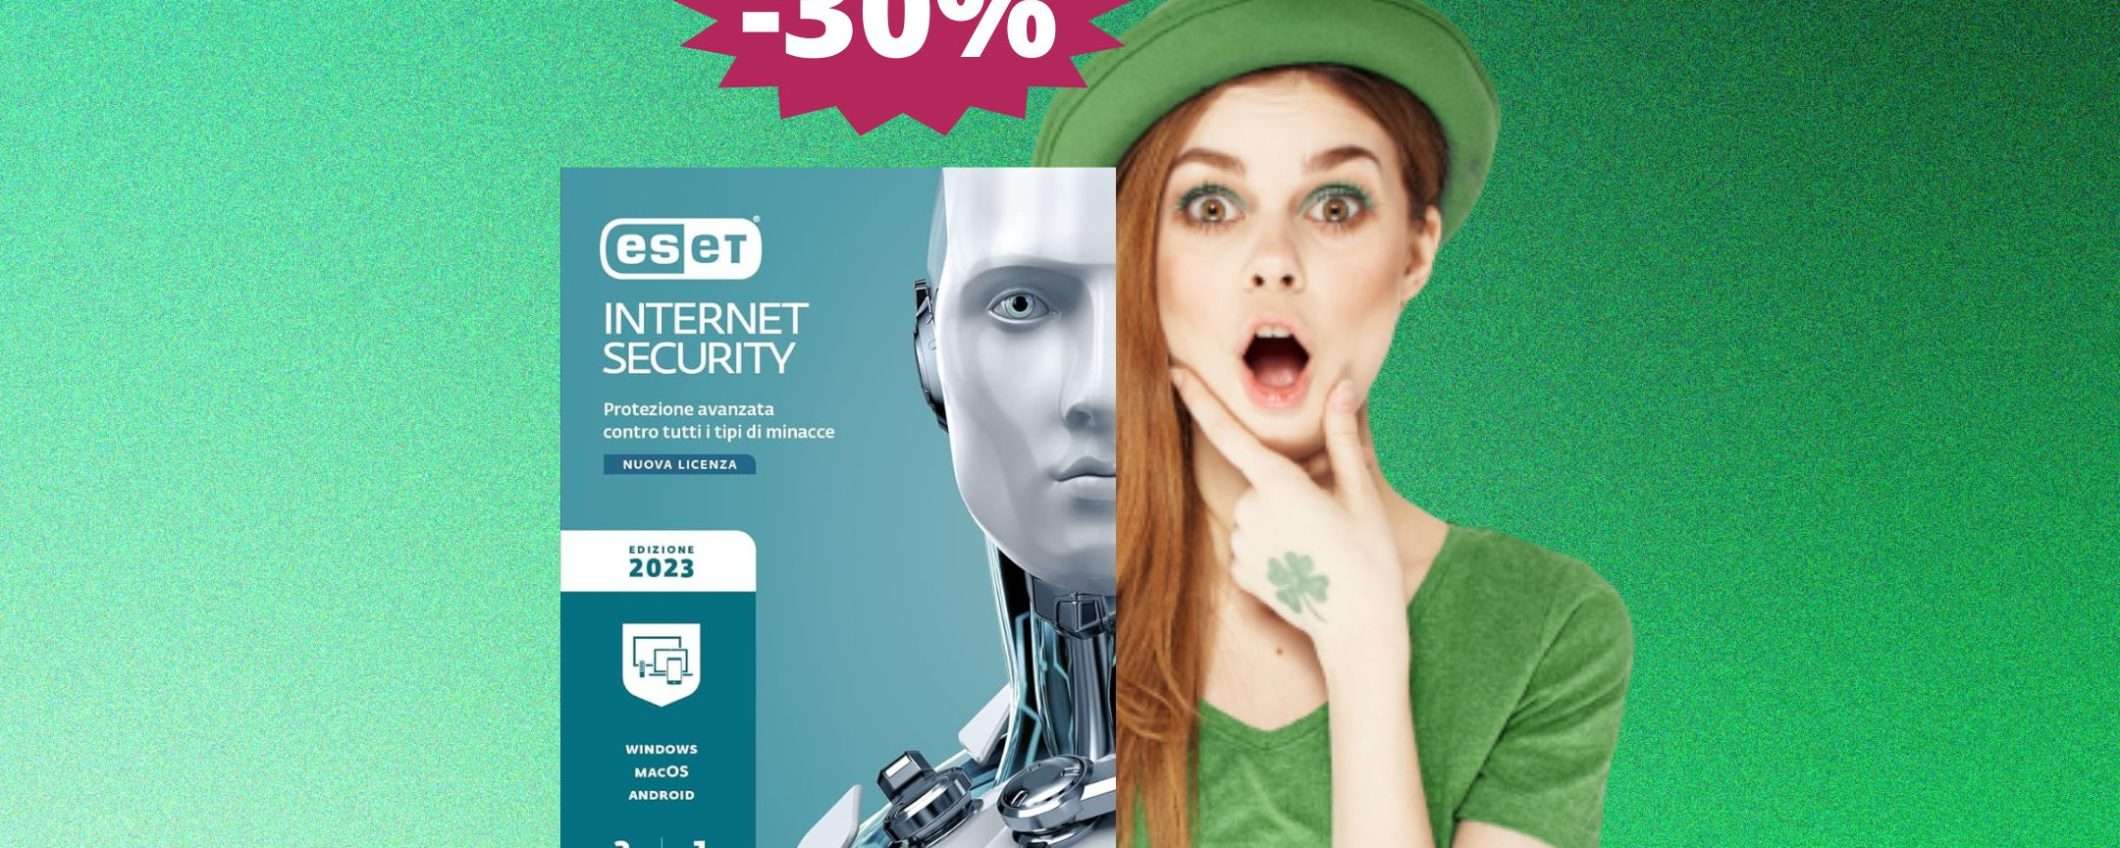 ESET Internet Security 2023: MEGA sconto del 30% su Amazon